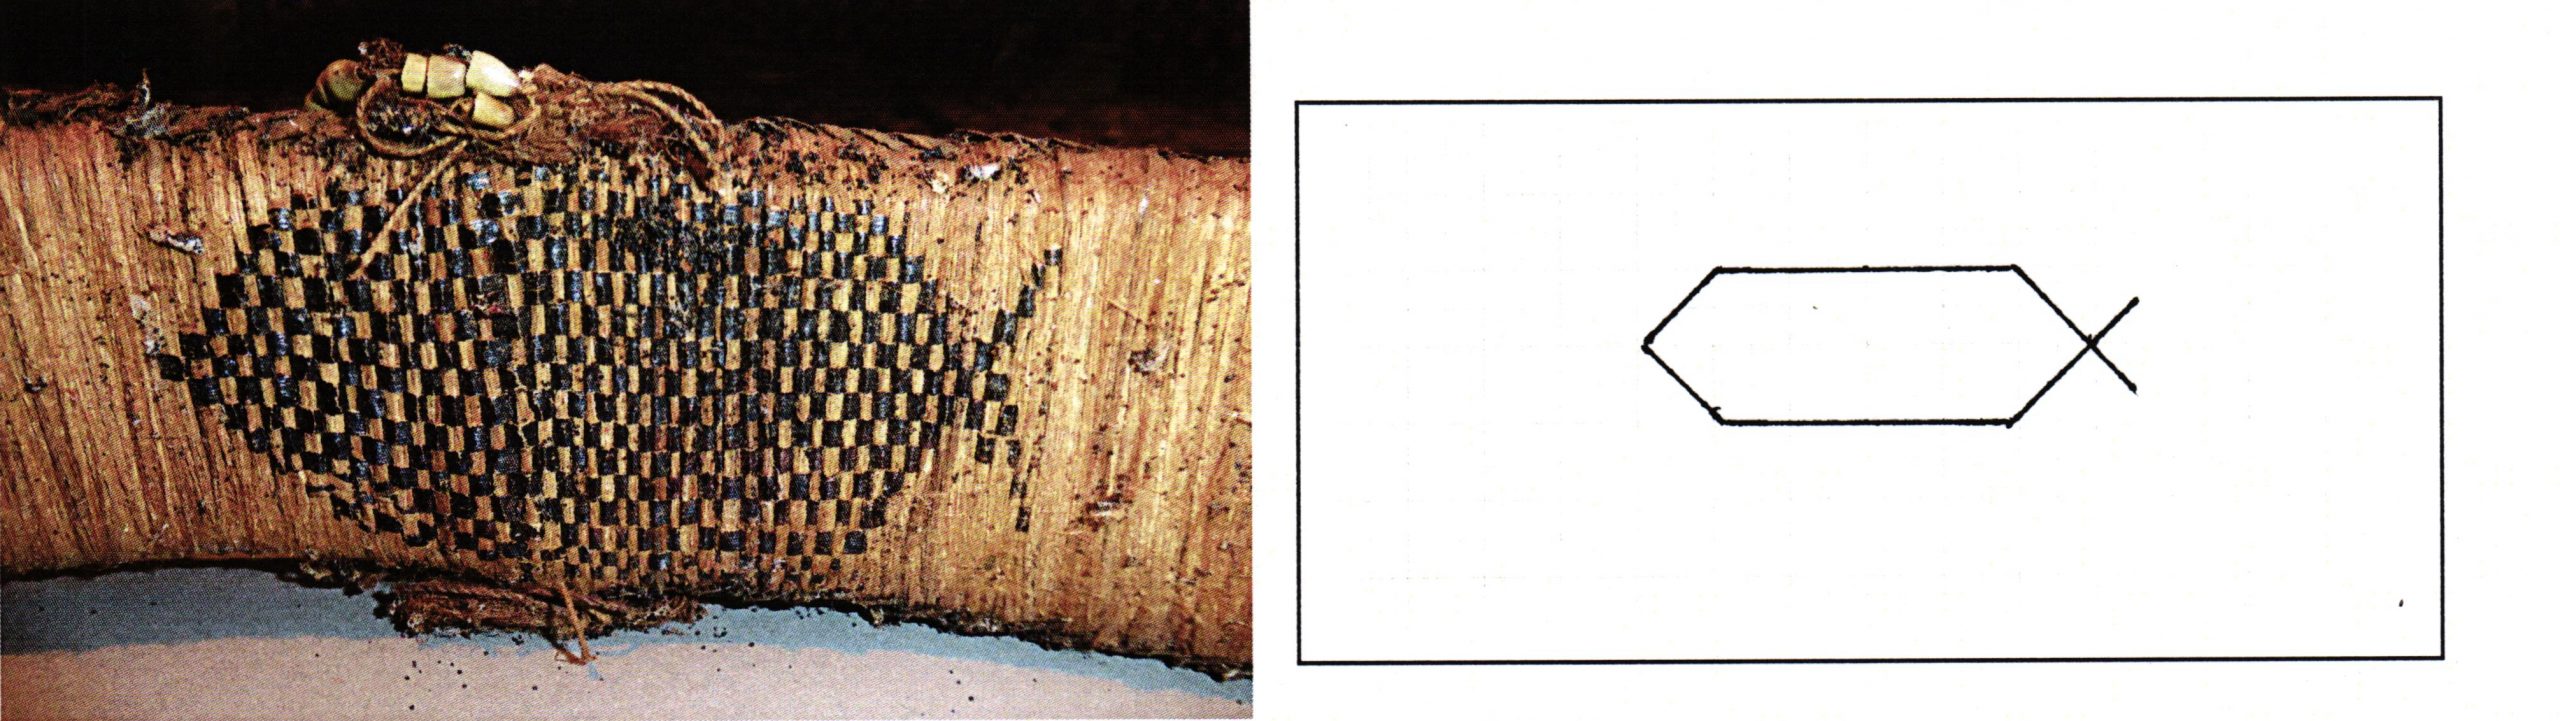 PGS 36,2 (2015) Tafel 41 Abb. 21: Federgeldrolle [EUBR 3]. Handwerkermarke langes Sechseck mit einseitigem Zeichen